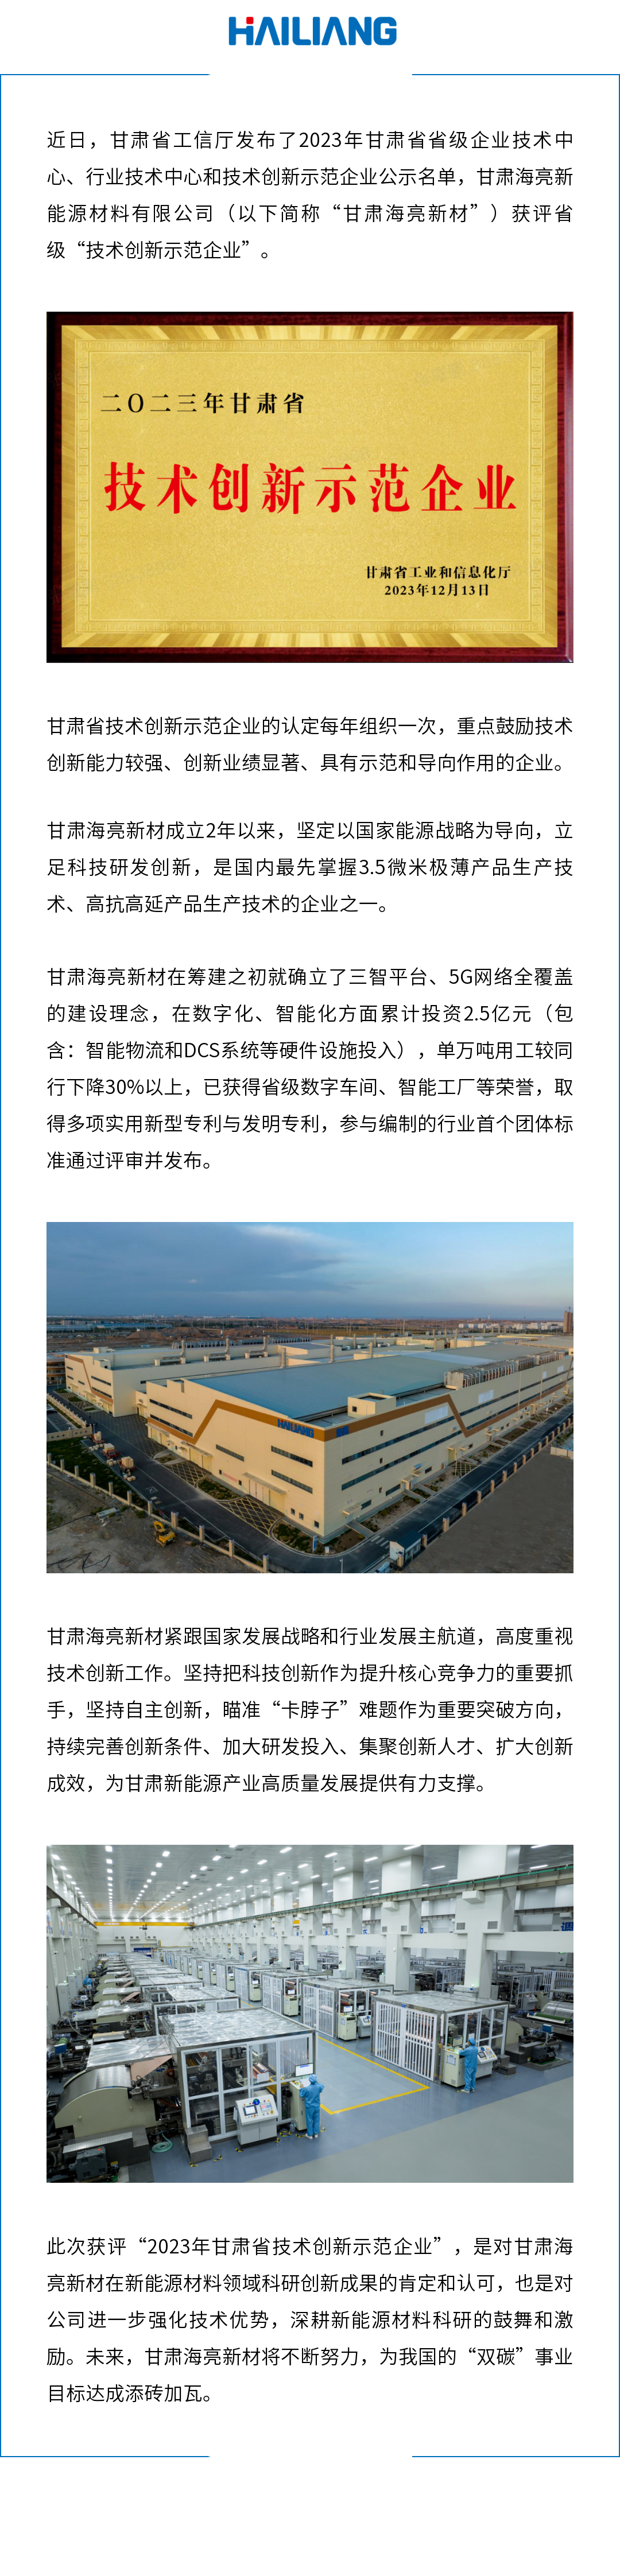 甘肃海亮新材获评“2023年省级技术创新示范企业”